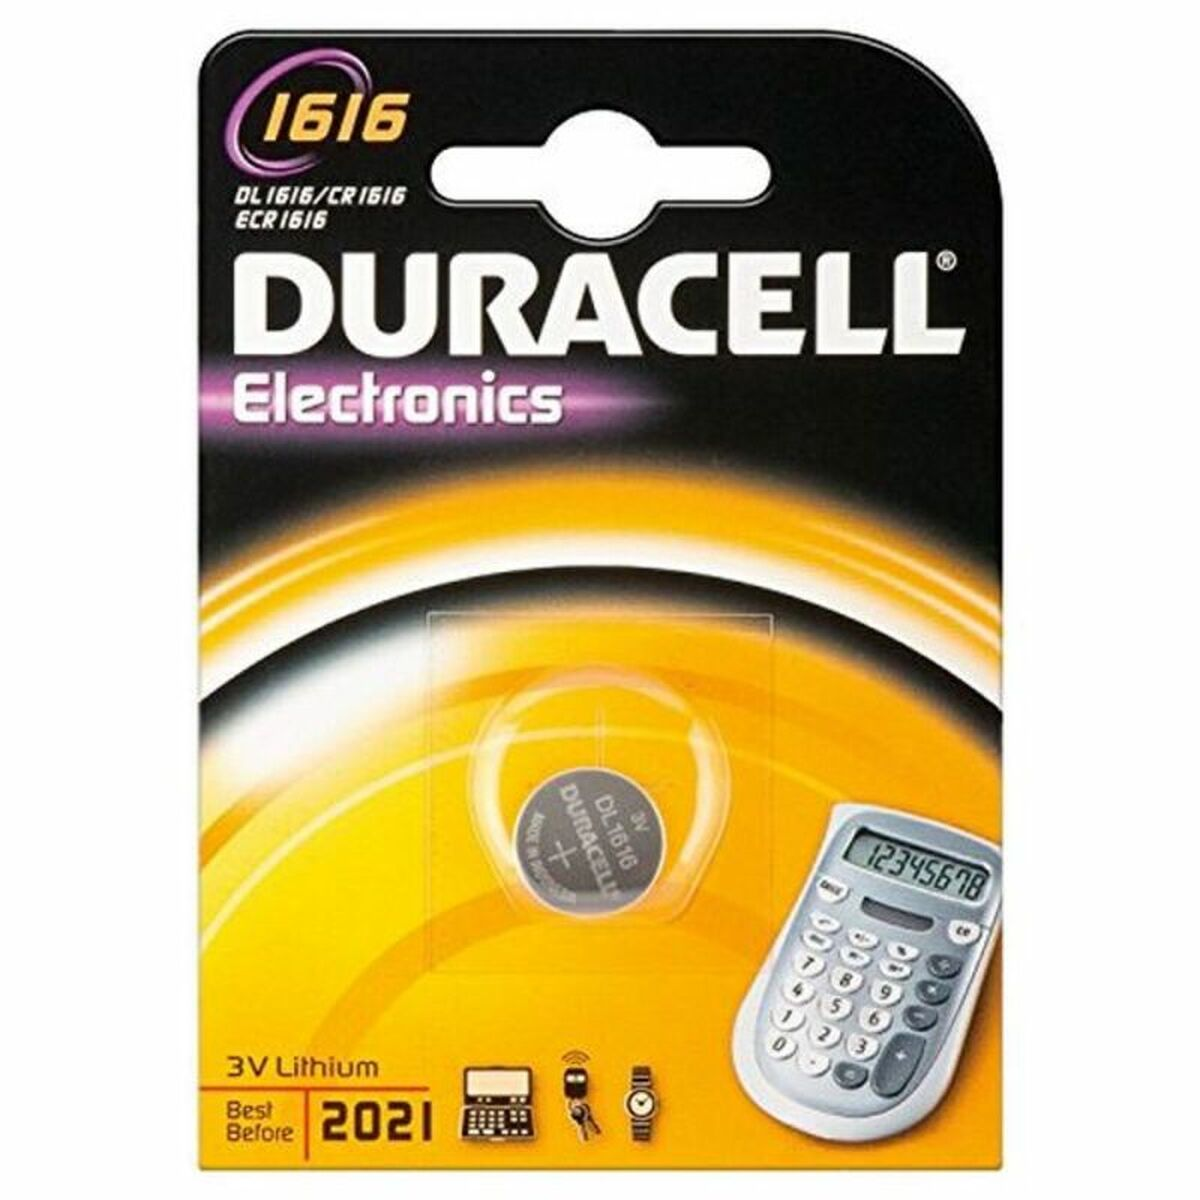 DURACELL 774678 DL mAh Batterie, 1616 1 55 Stück Volt, CR1616 Lithium, 3 B1